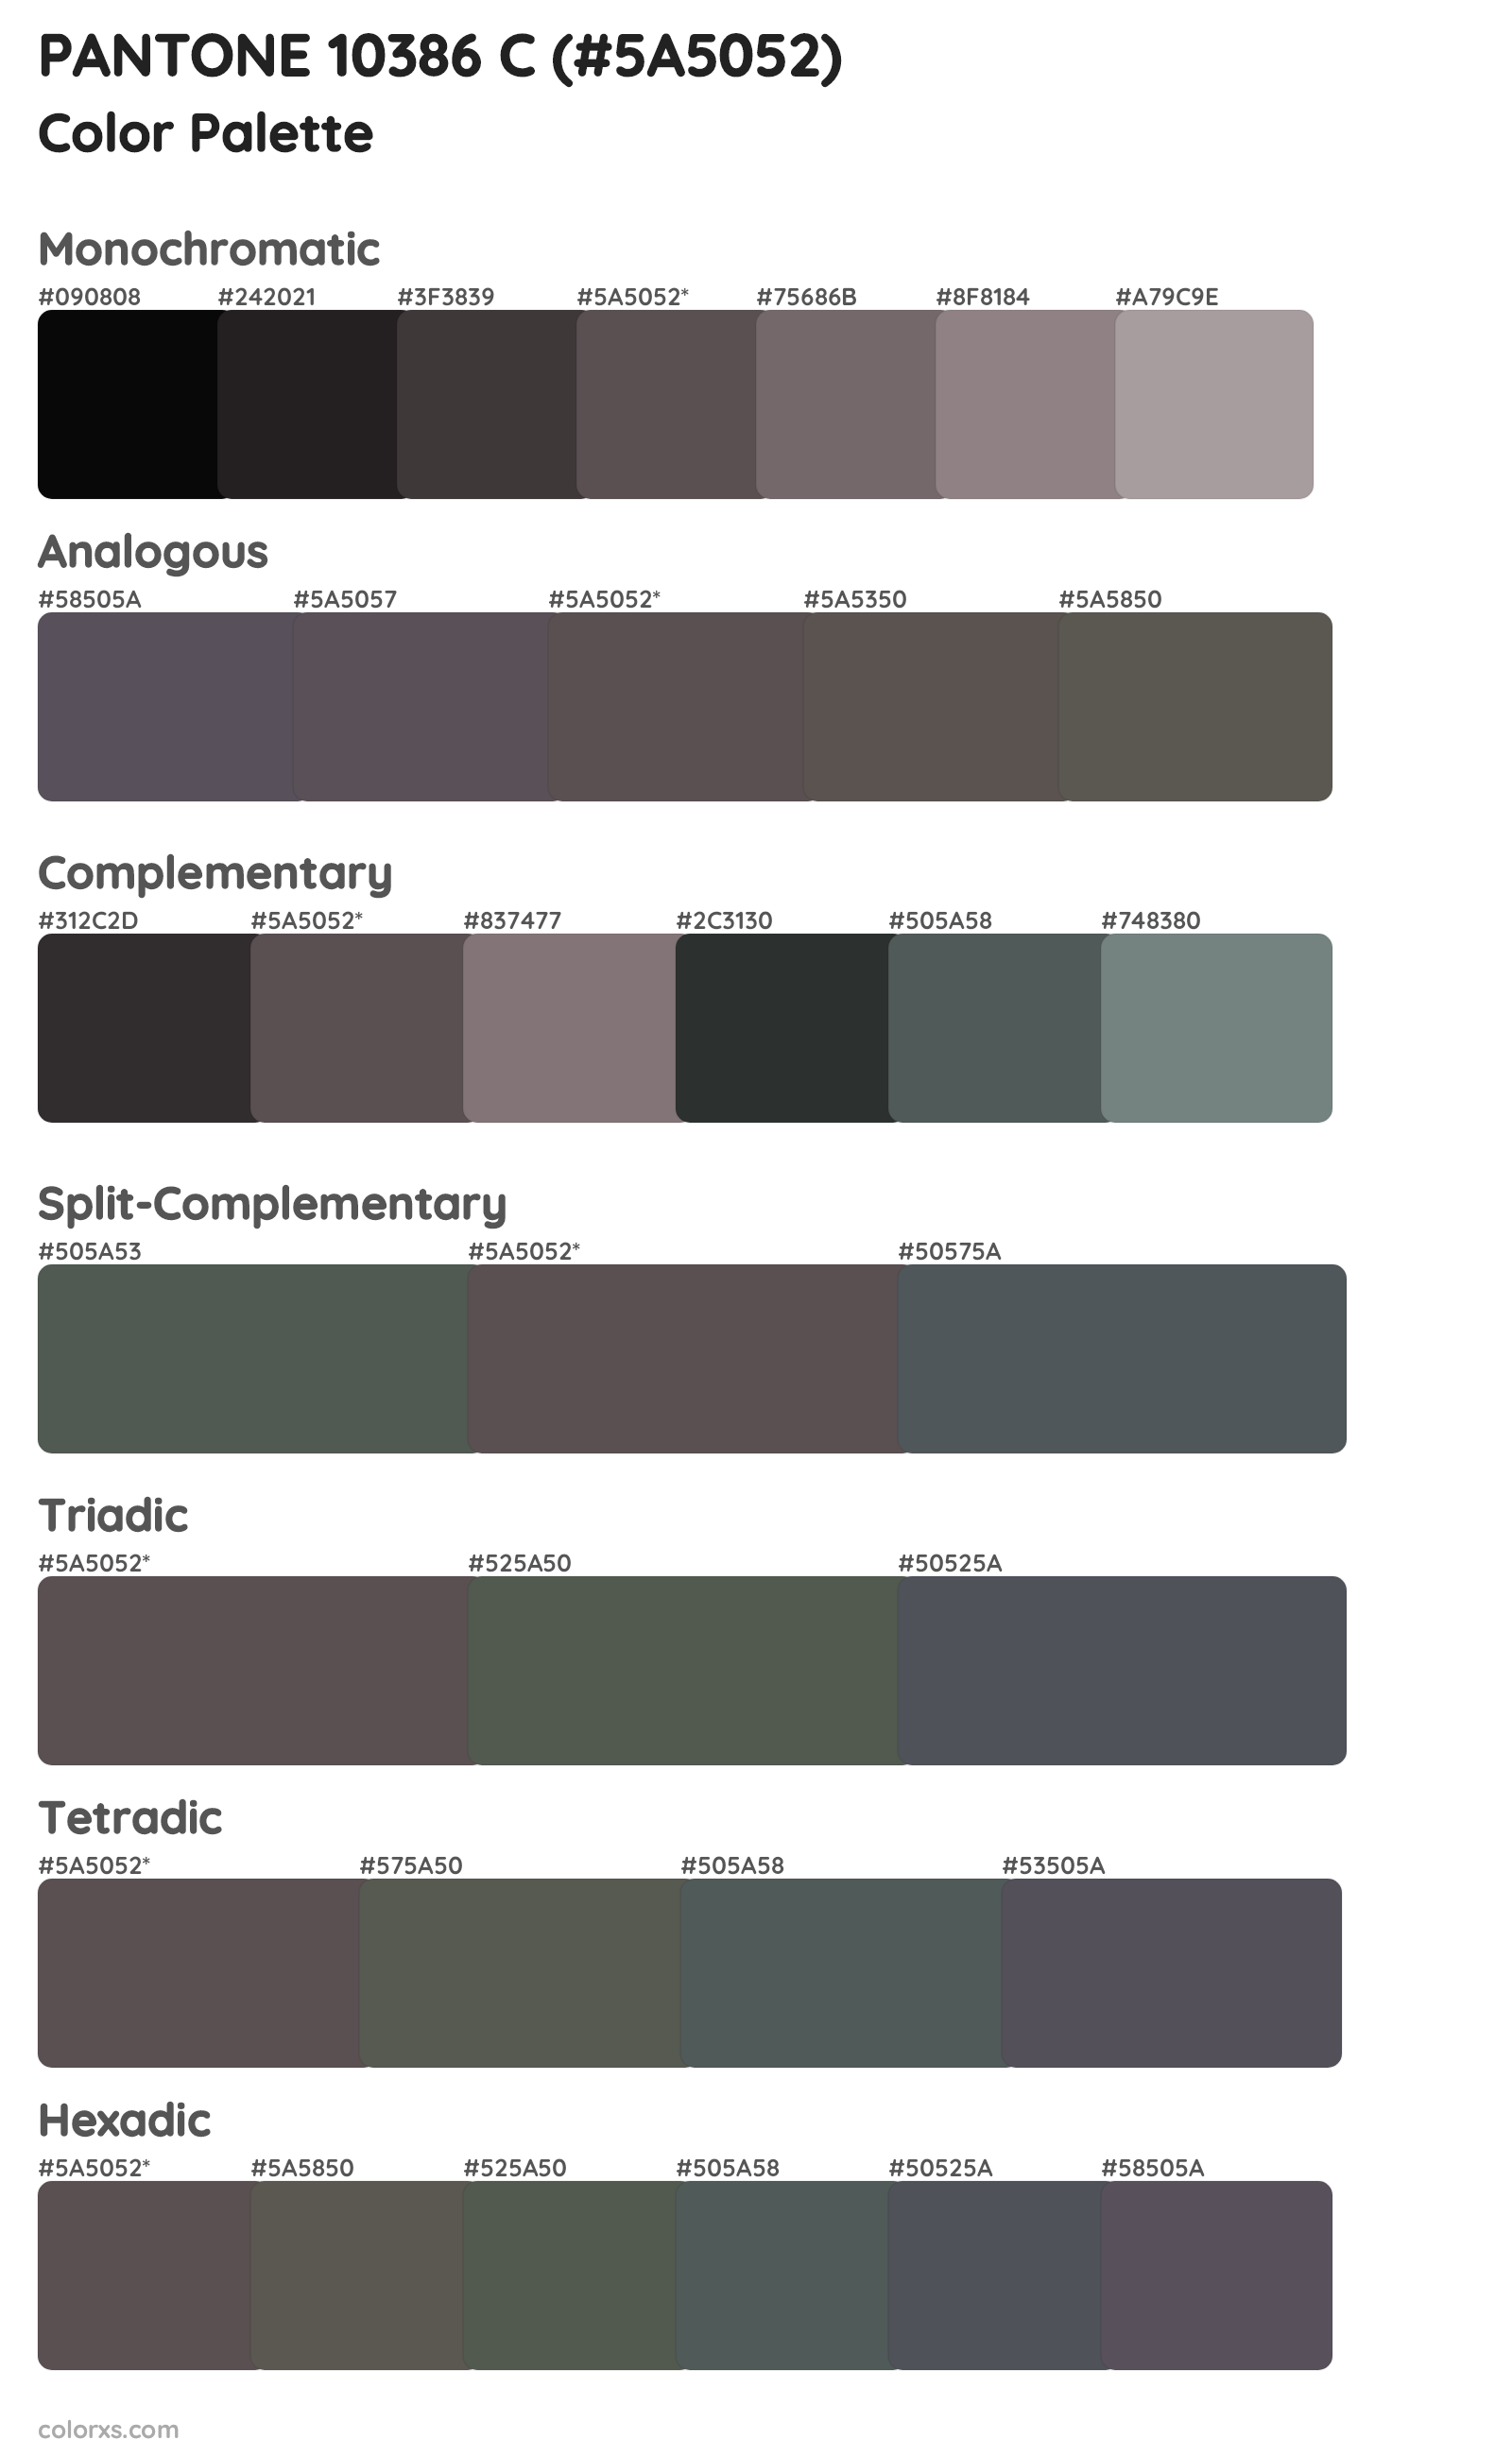 PANTONE 10386 C Color Scheme Palettes